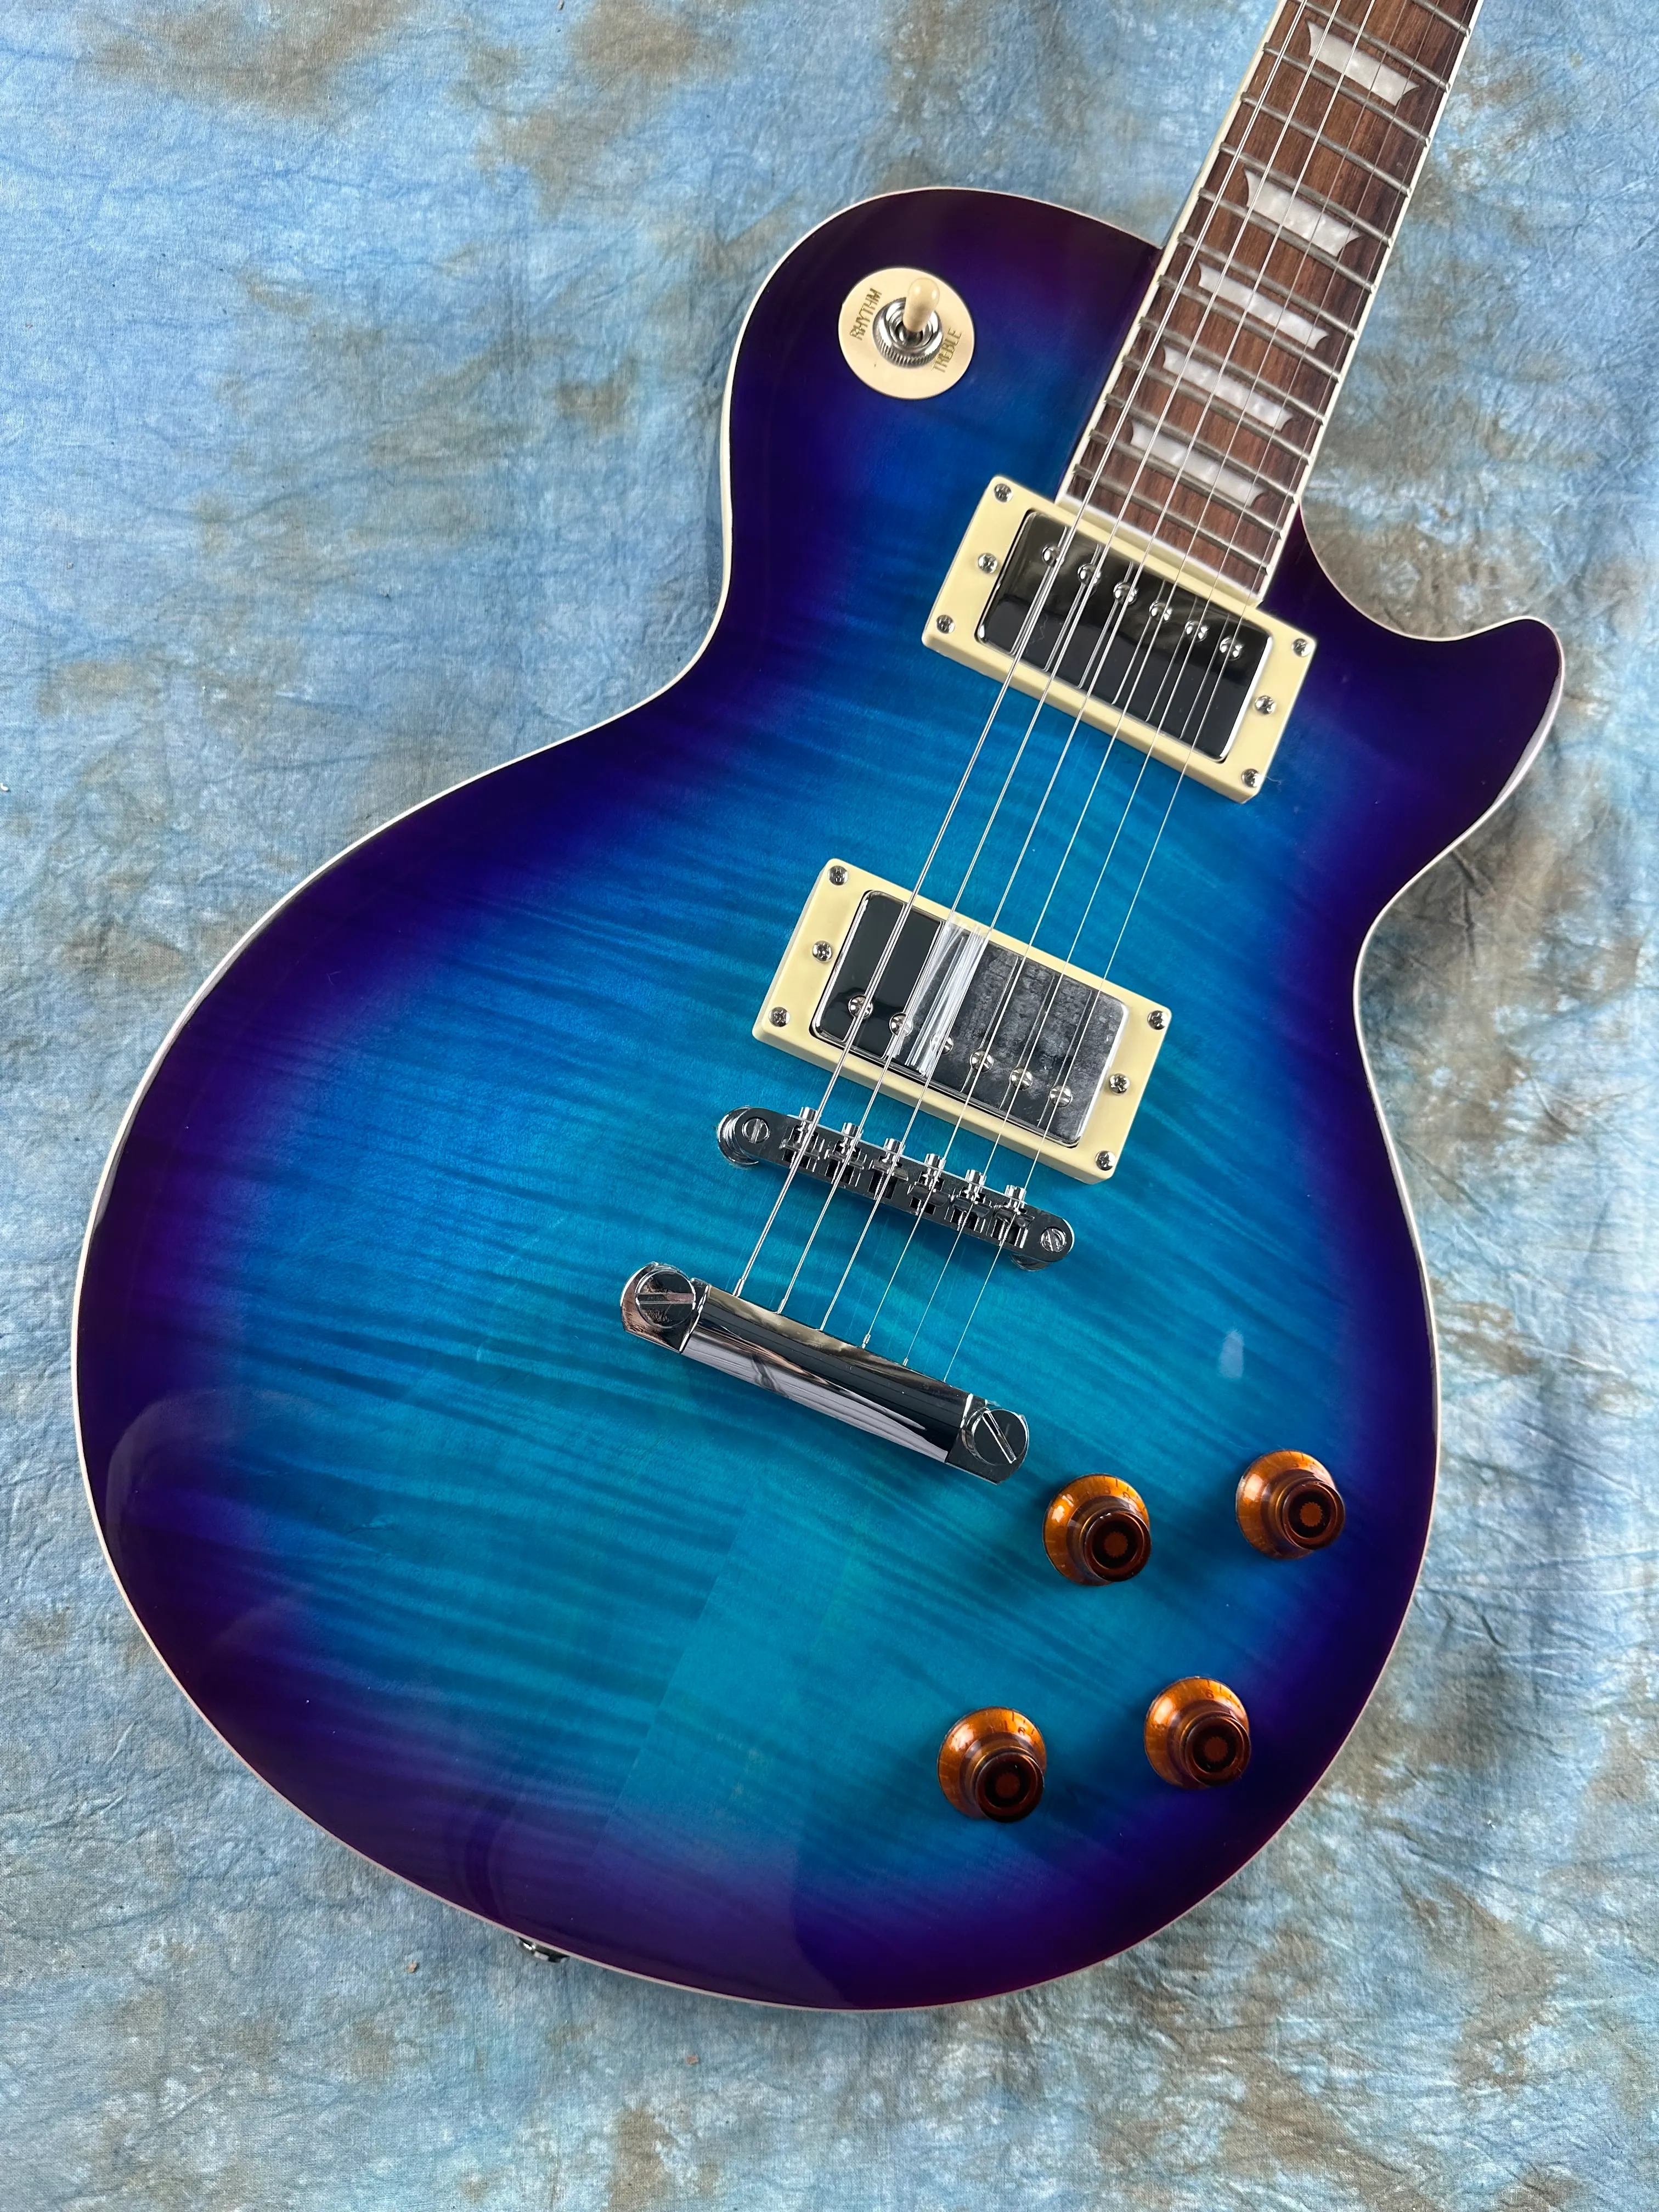 Standard-E-Gitarre, Korpus aus Pfirsichblüten-Kernholz, Farbverlauf mit Blaubeer-Tiger-Muster, schneller Versand